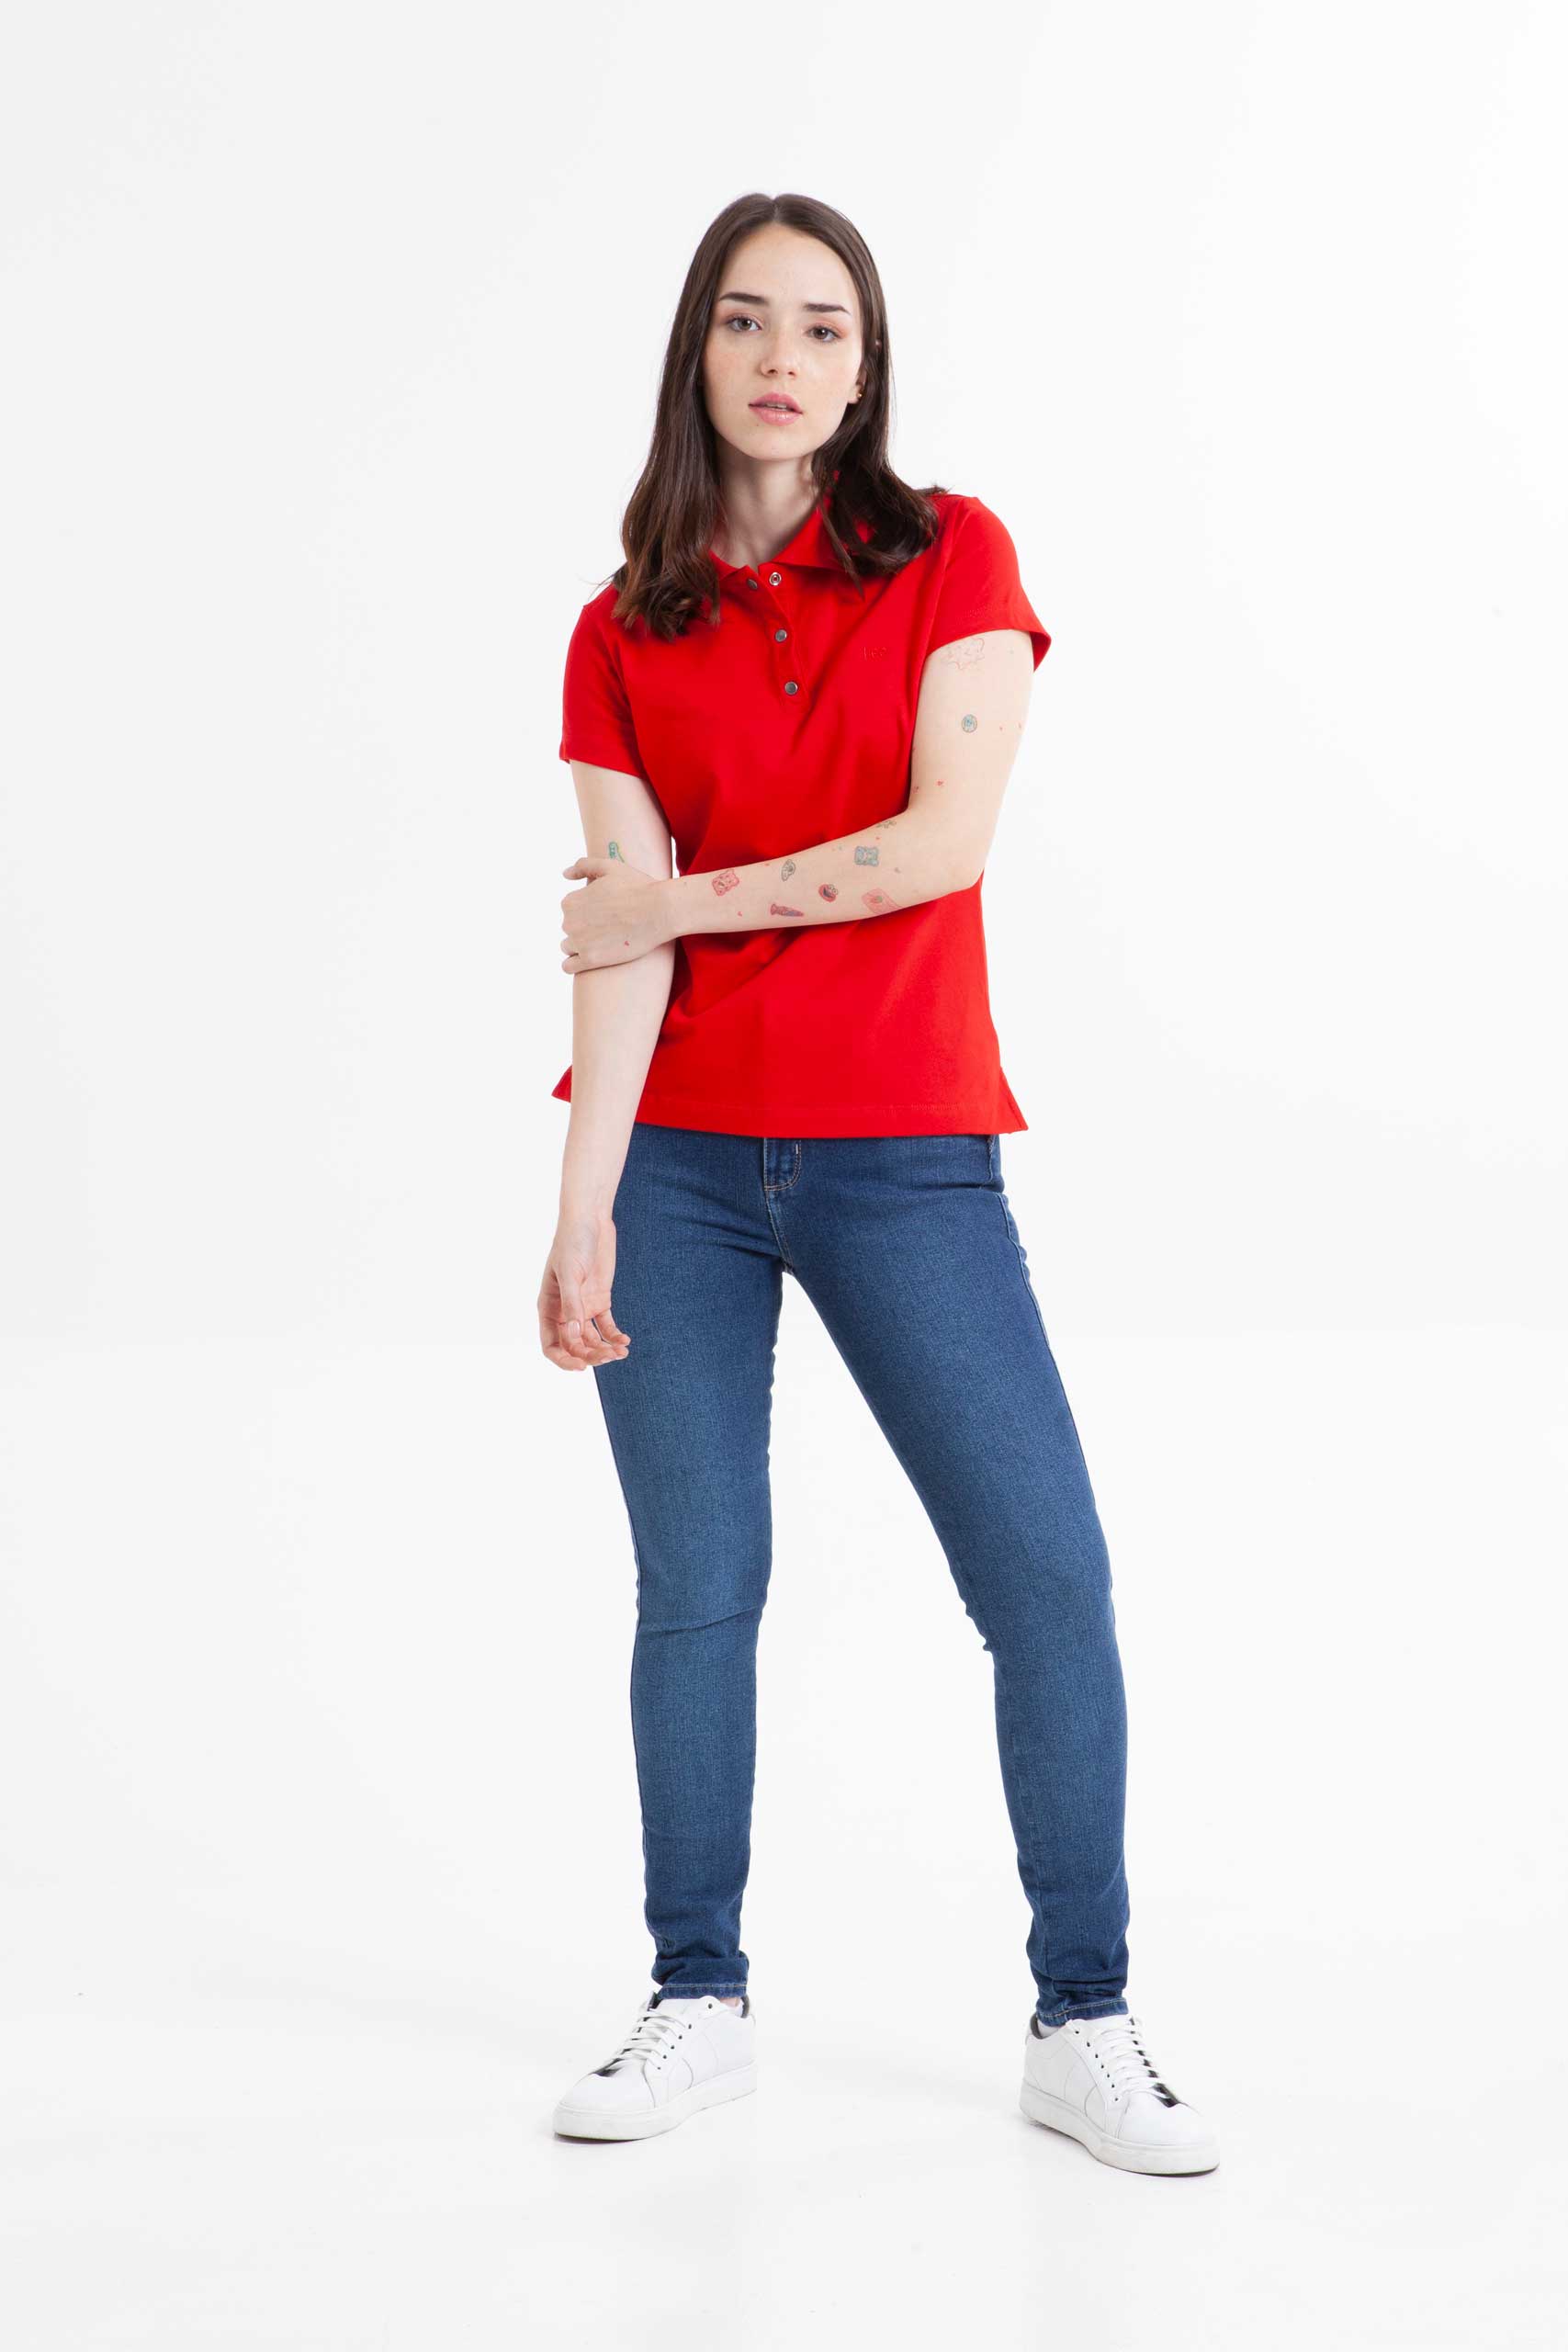 Vista frontal de camiseta color rojo marca lee.